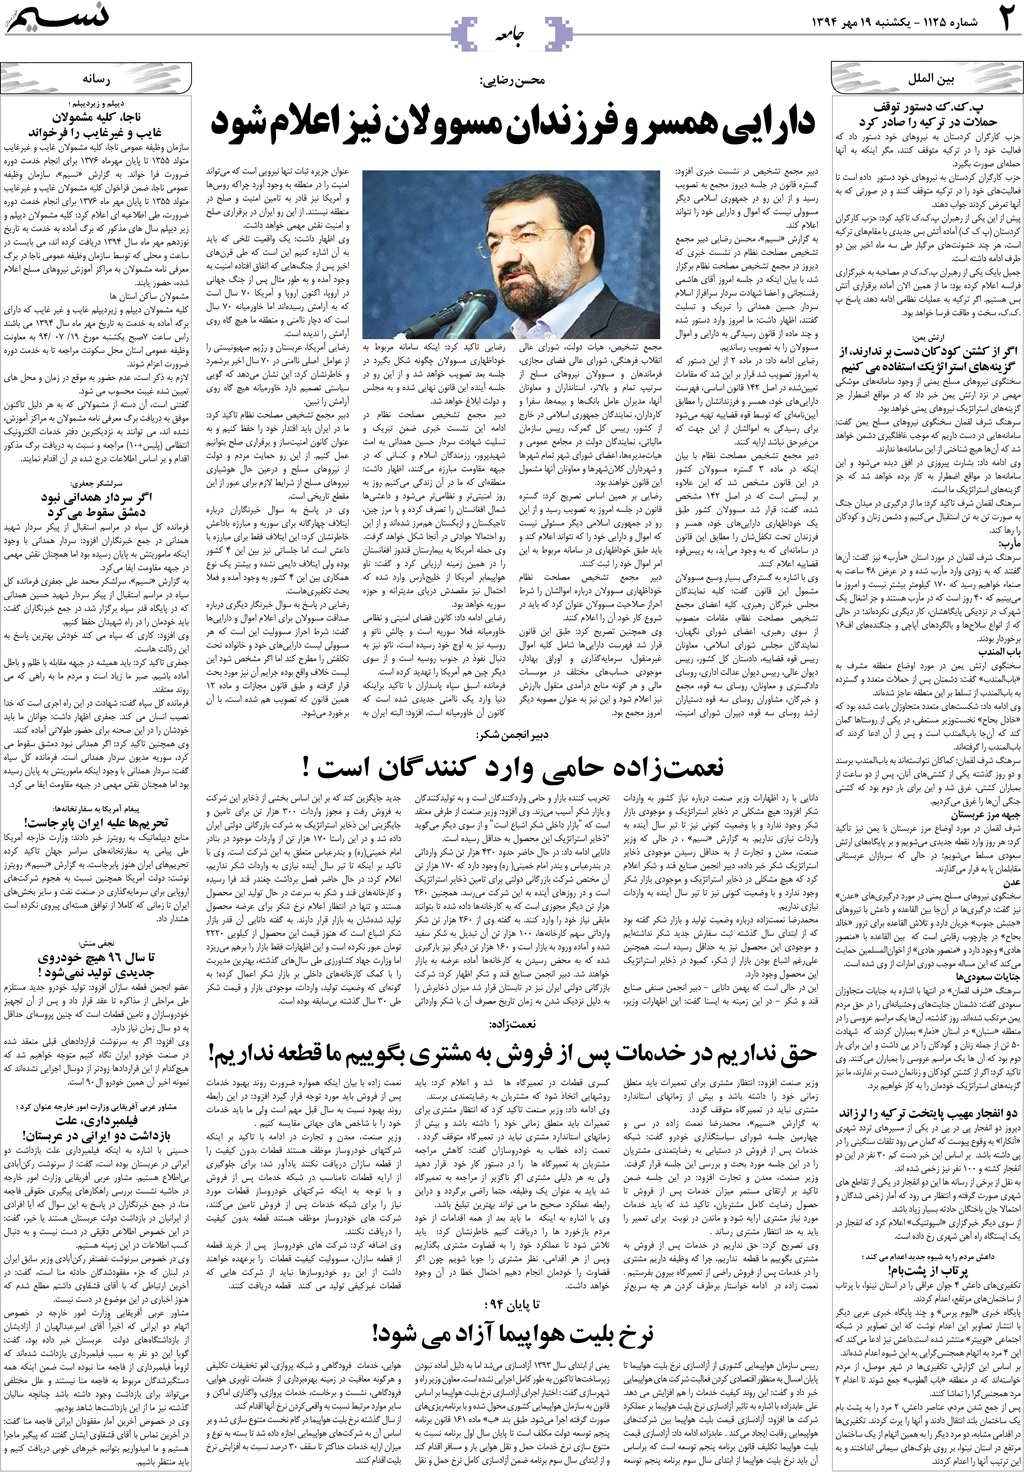 صفحه جامعه روزنامه نسیم شماره 1125